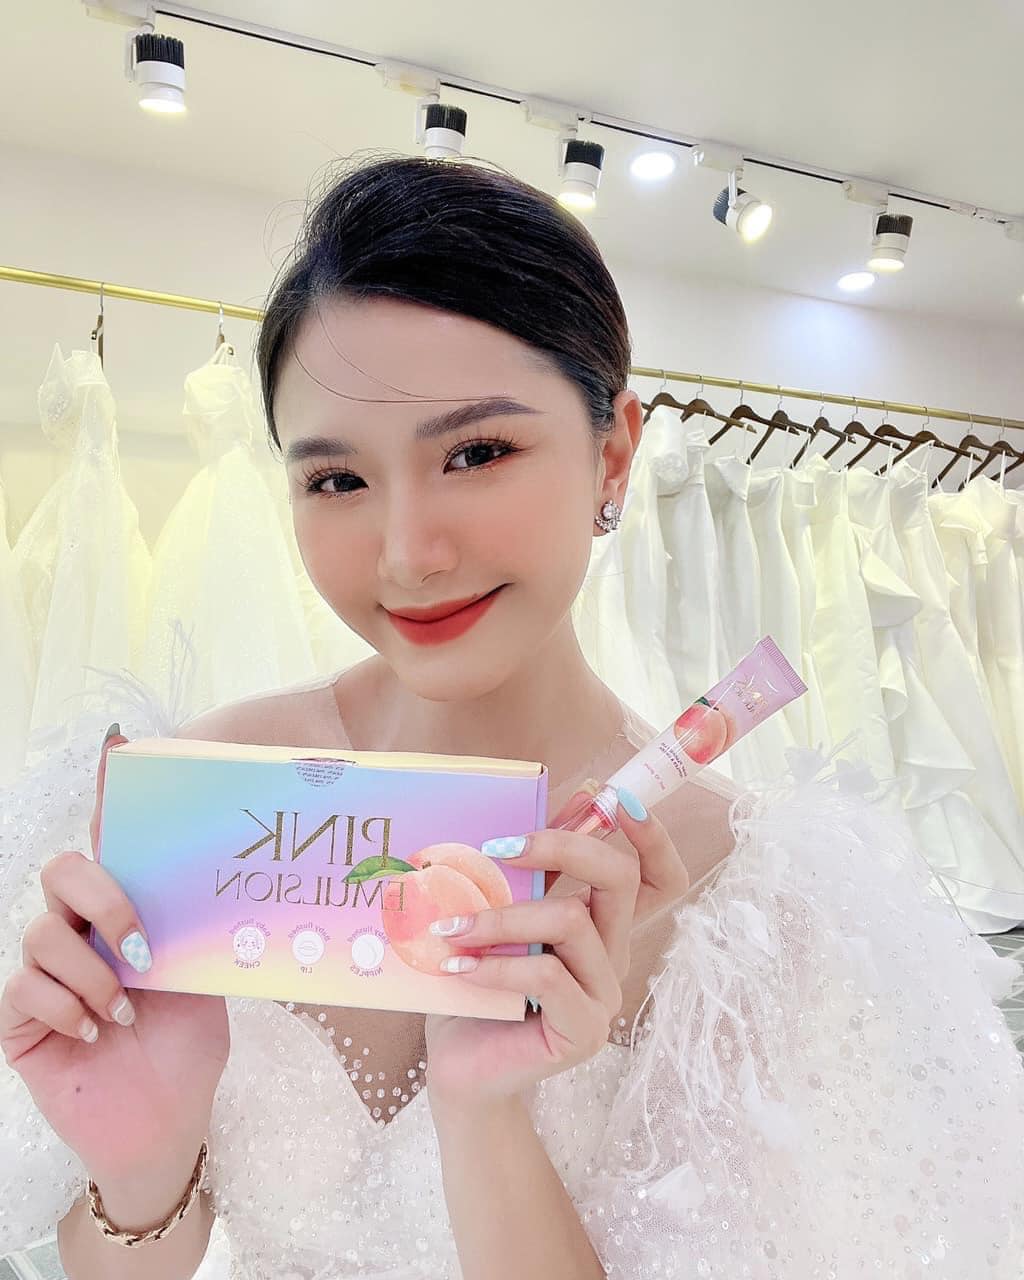 Kem dưỡng má hồng pink Emulsion Thanh Tô Cosmetics chính hãng - MAHONG01